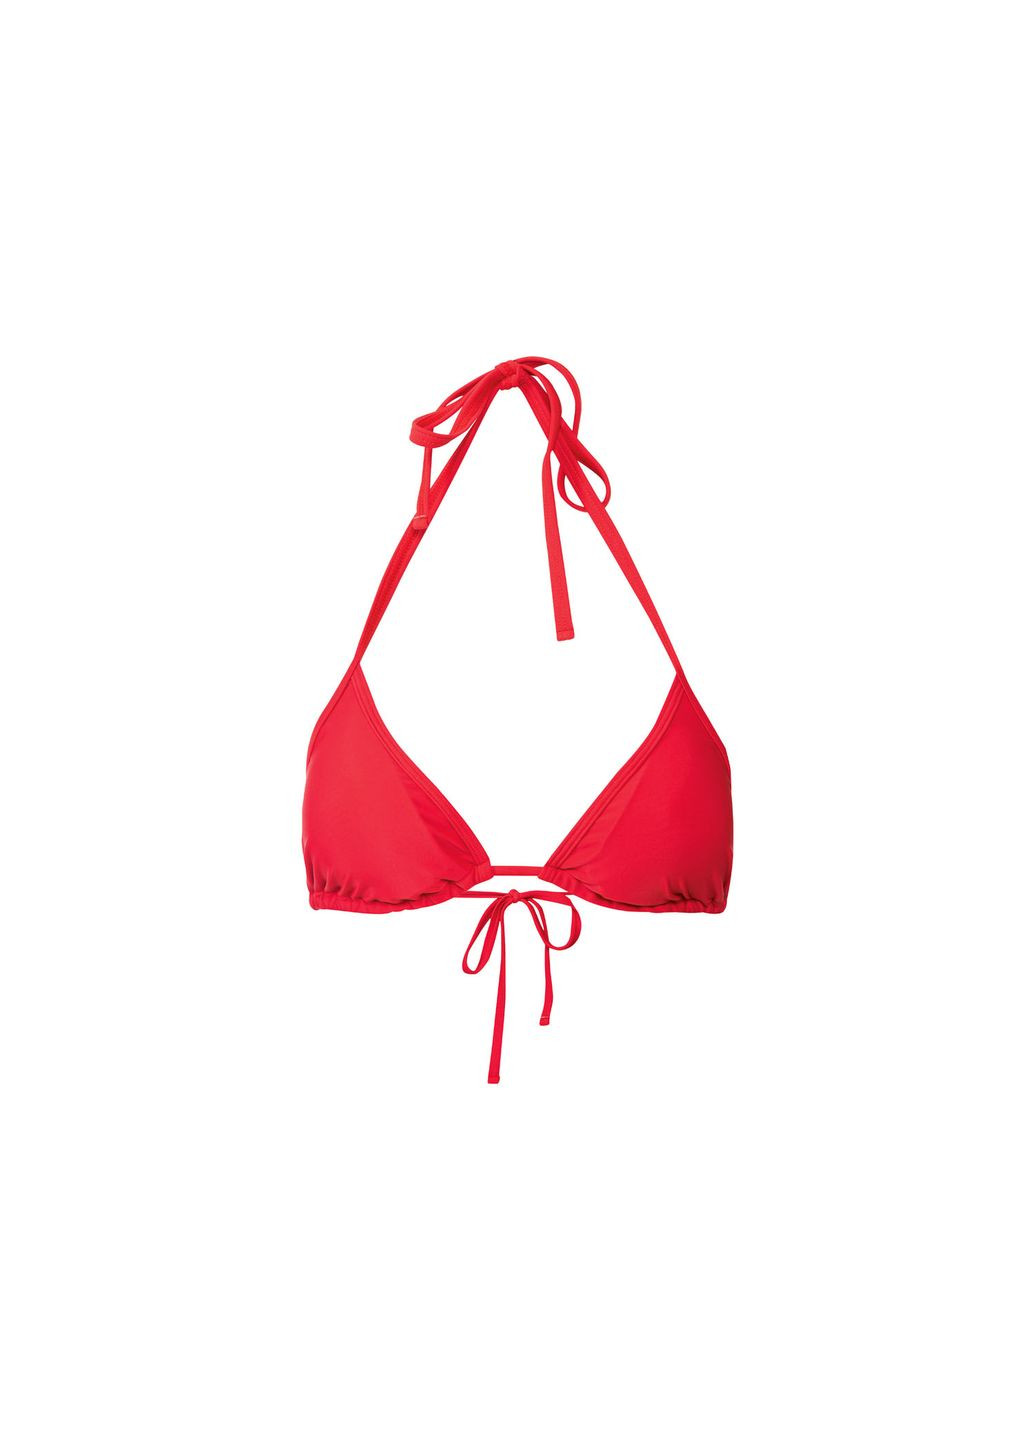 Красный купальник раздельный на завязках для женщины 371920 Esmara С открытой спиной, С открытыми плечами